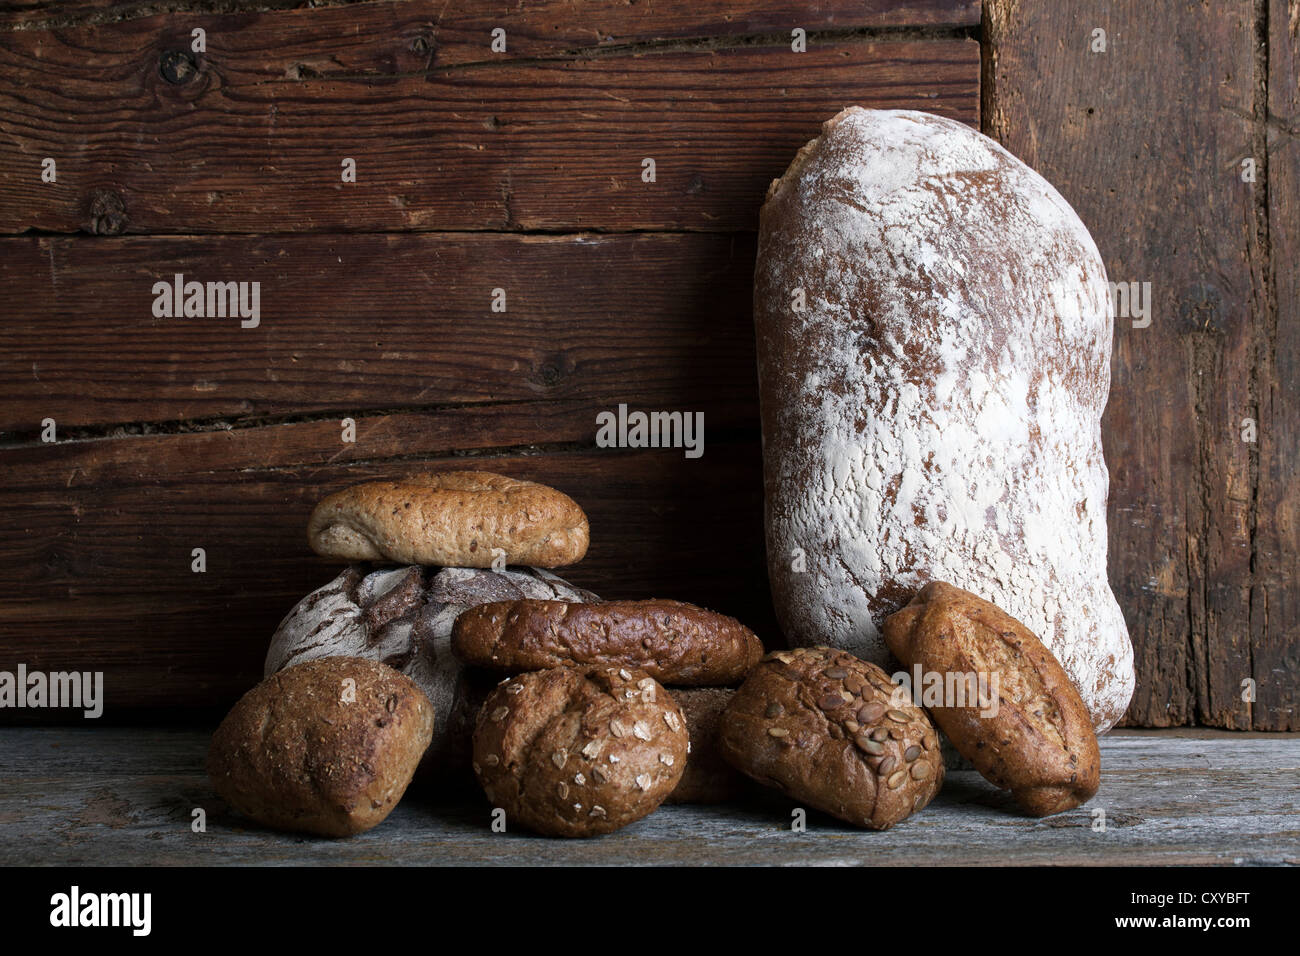 Miche de pain et petits pains sur une surface en bois rustique Banque D'Images